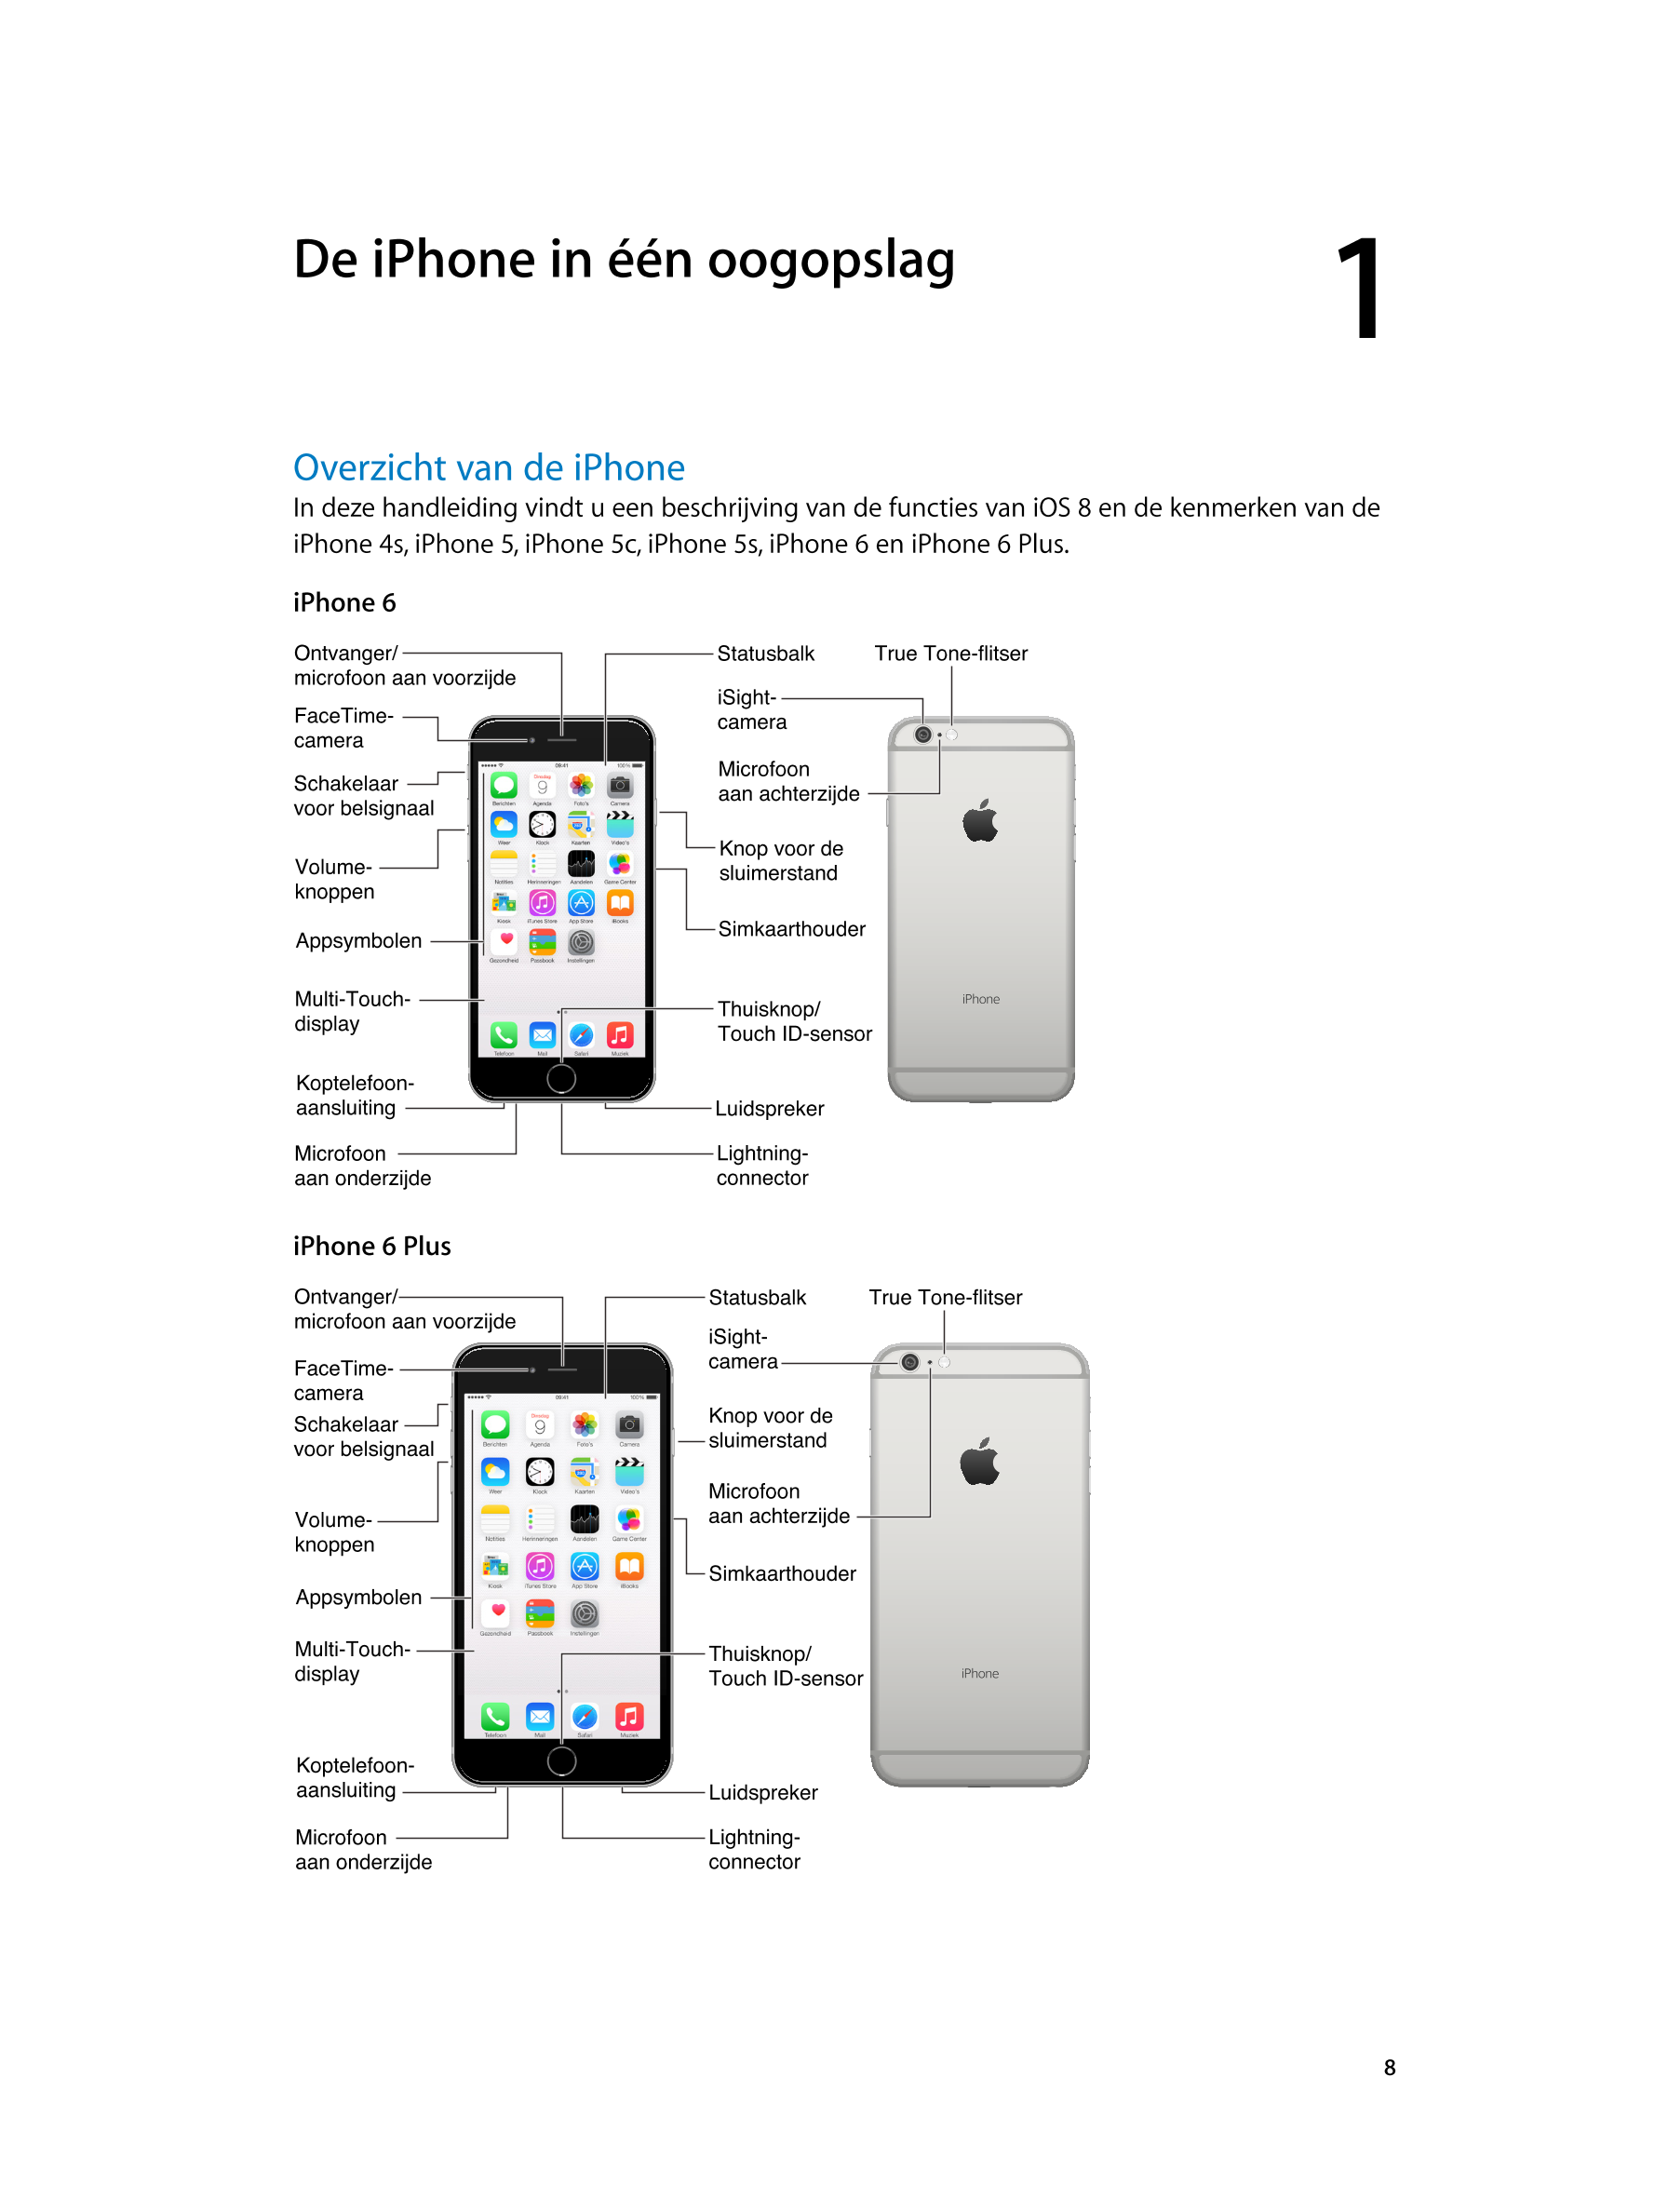   De iPhone in één oogopslag 1
Overzicht van de iPhone
In deze handleiding vindt u een beschrijving van de functies van iOS 8 en